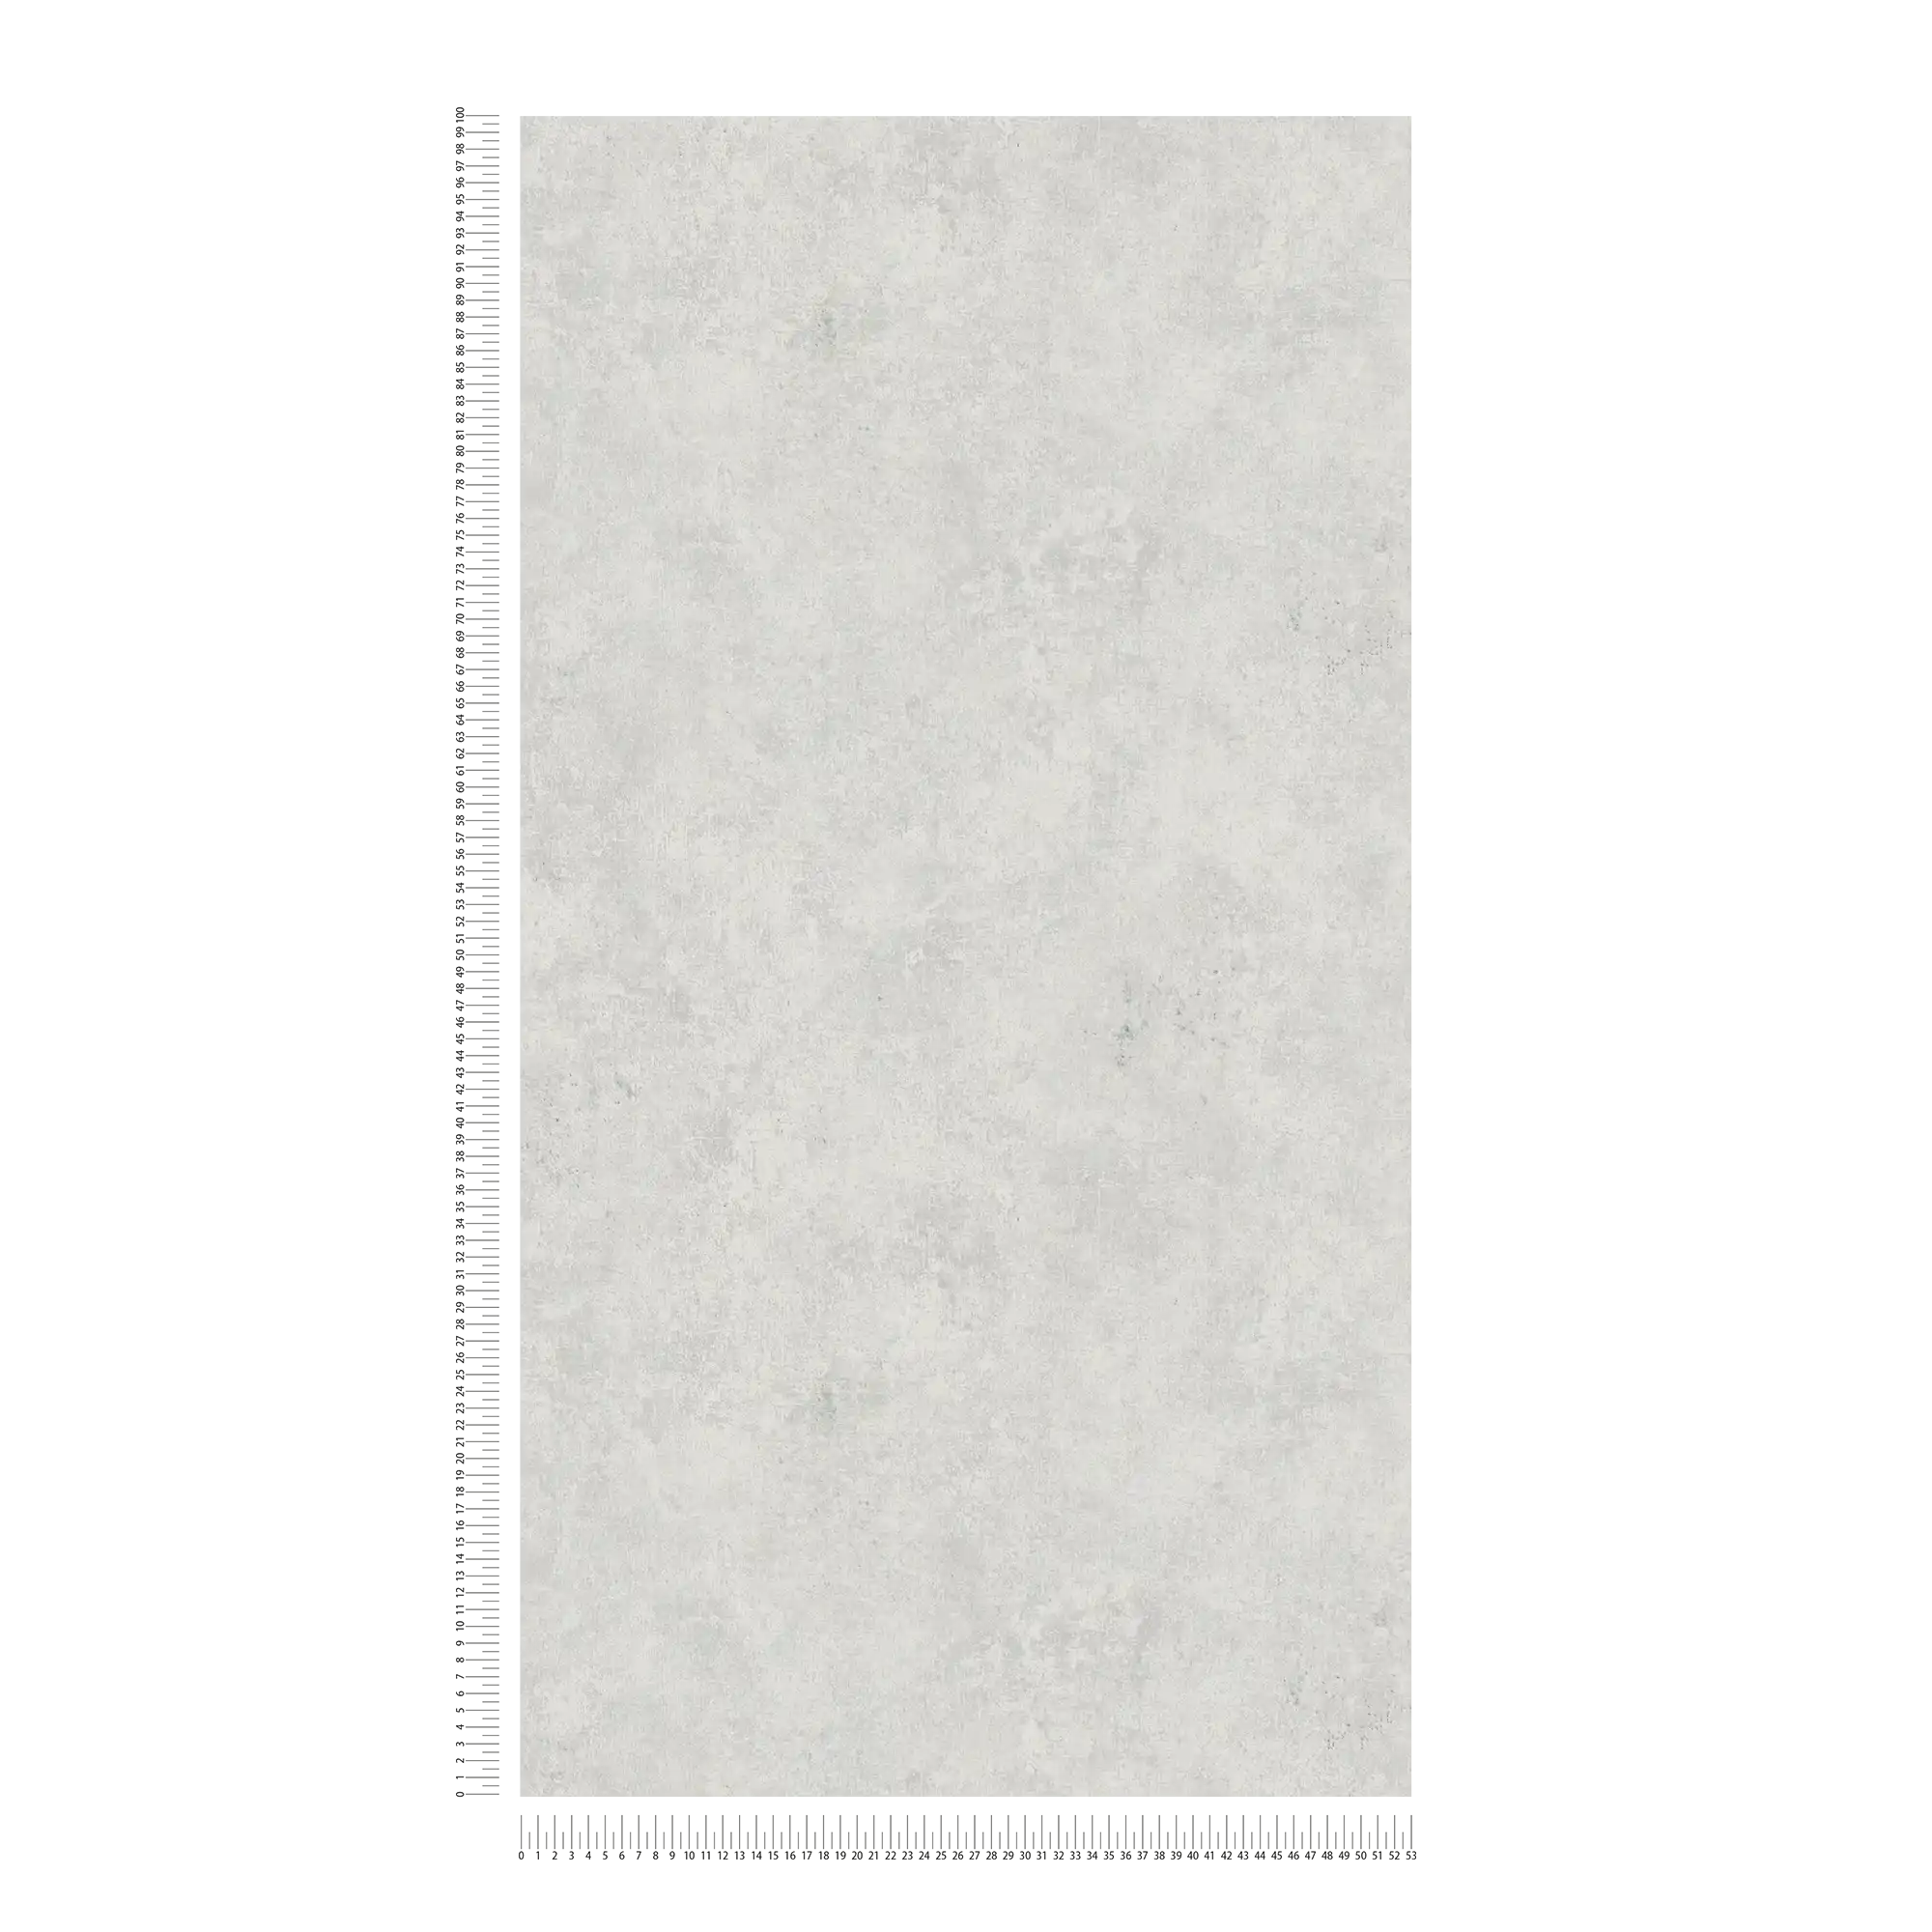             Papier peint uni aspect crépi, look usé & design rétro - argenté
        